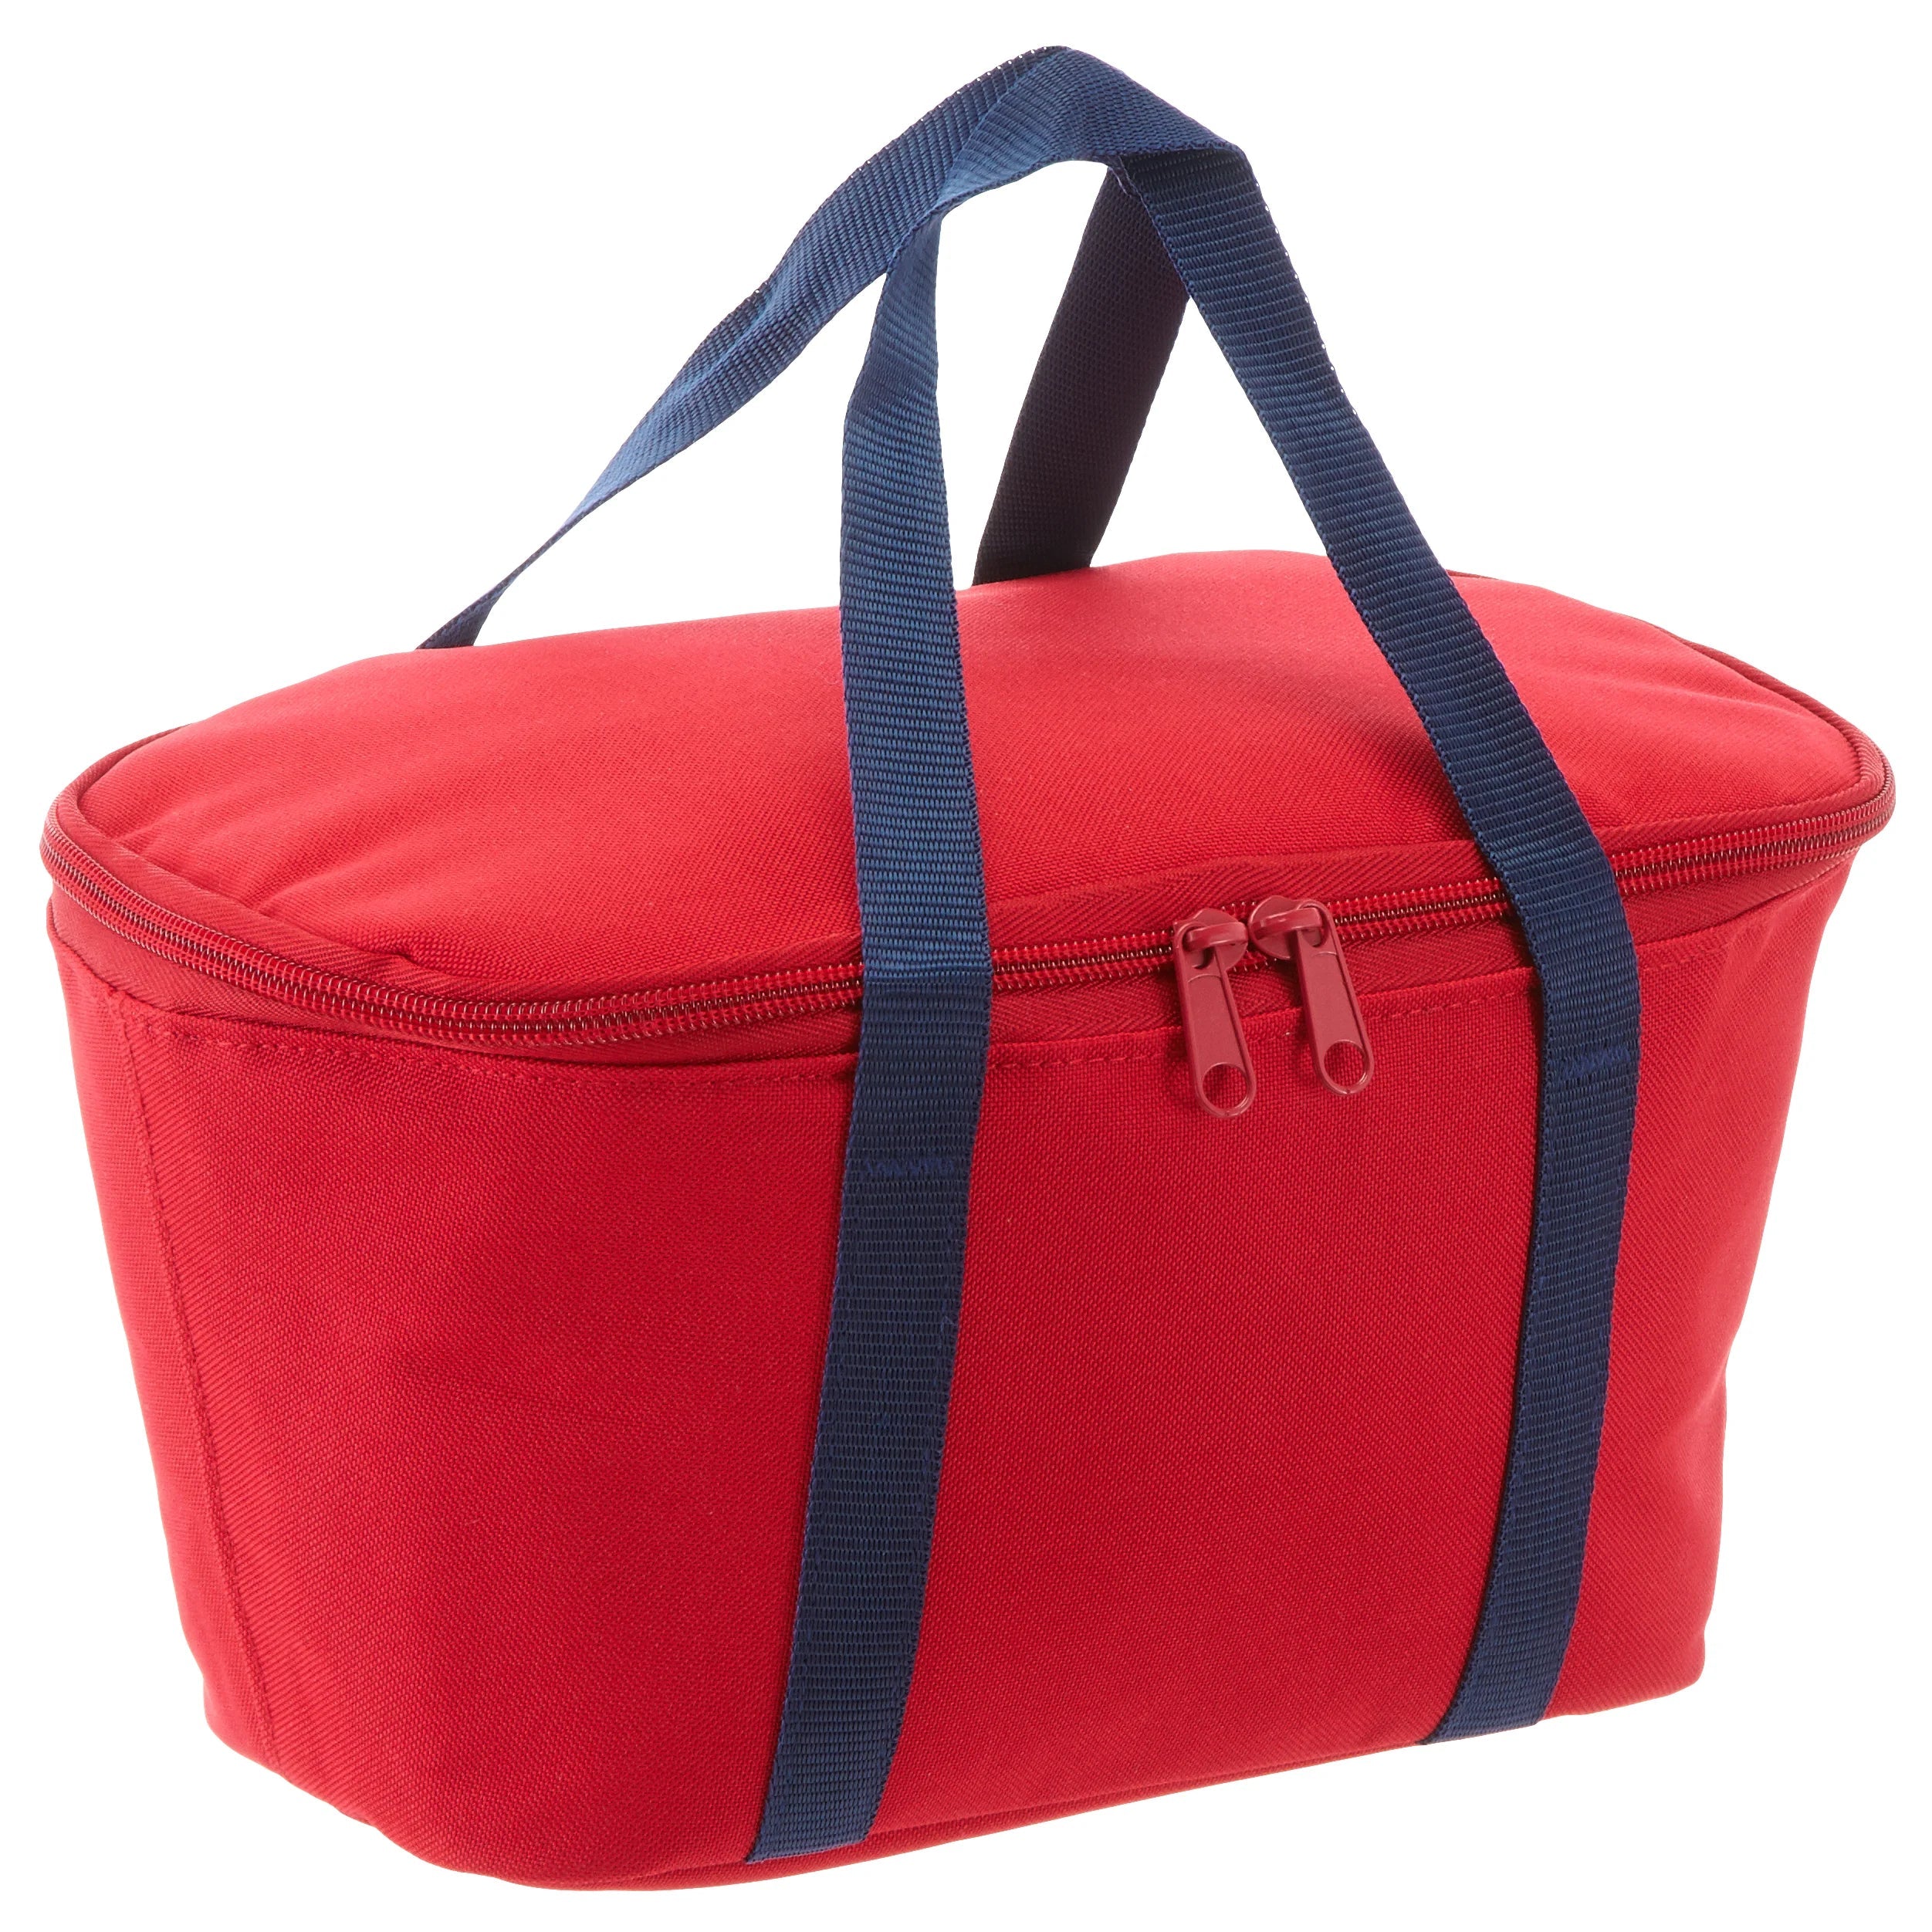 Reisenthel Shopping Coolerbag XS 27 cm - red